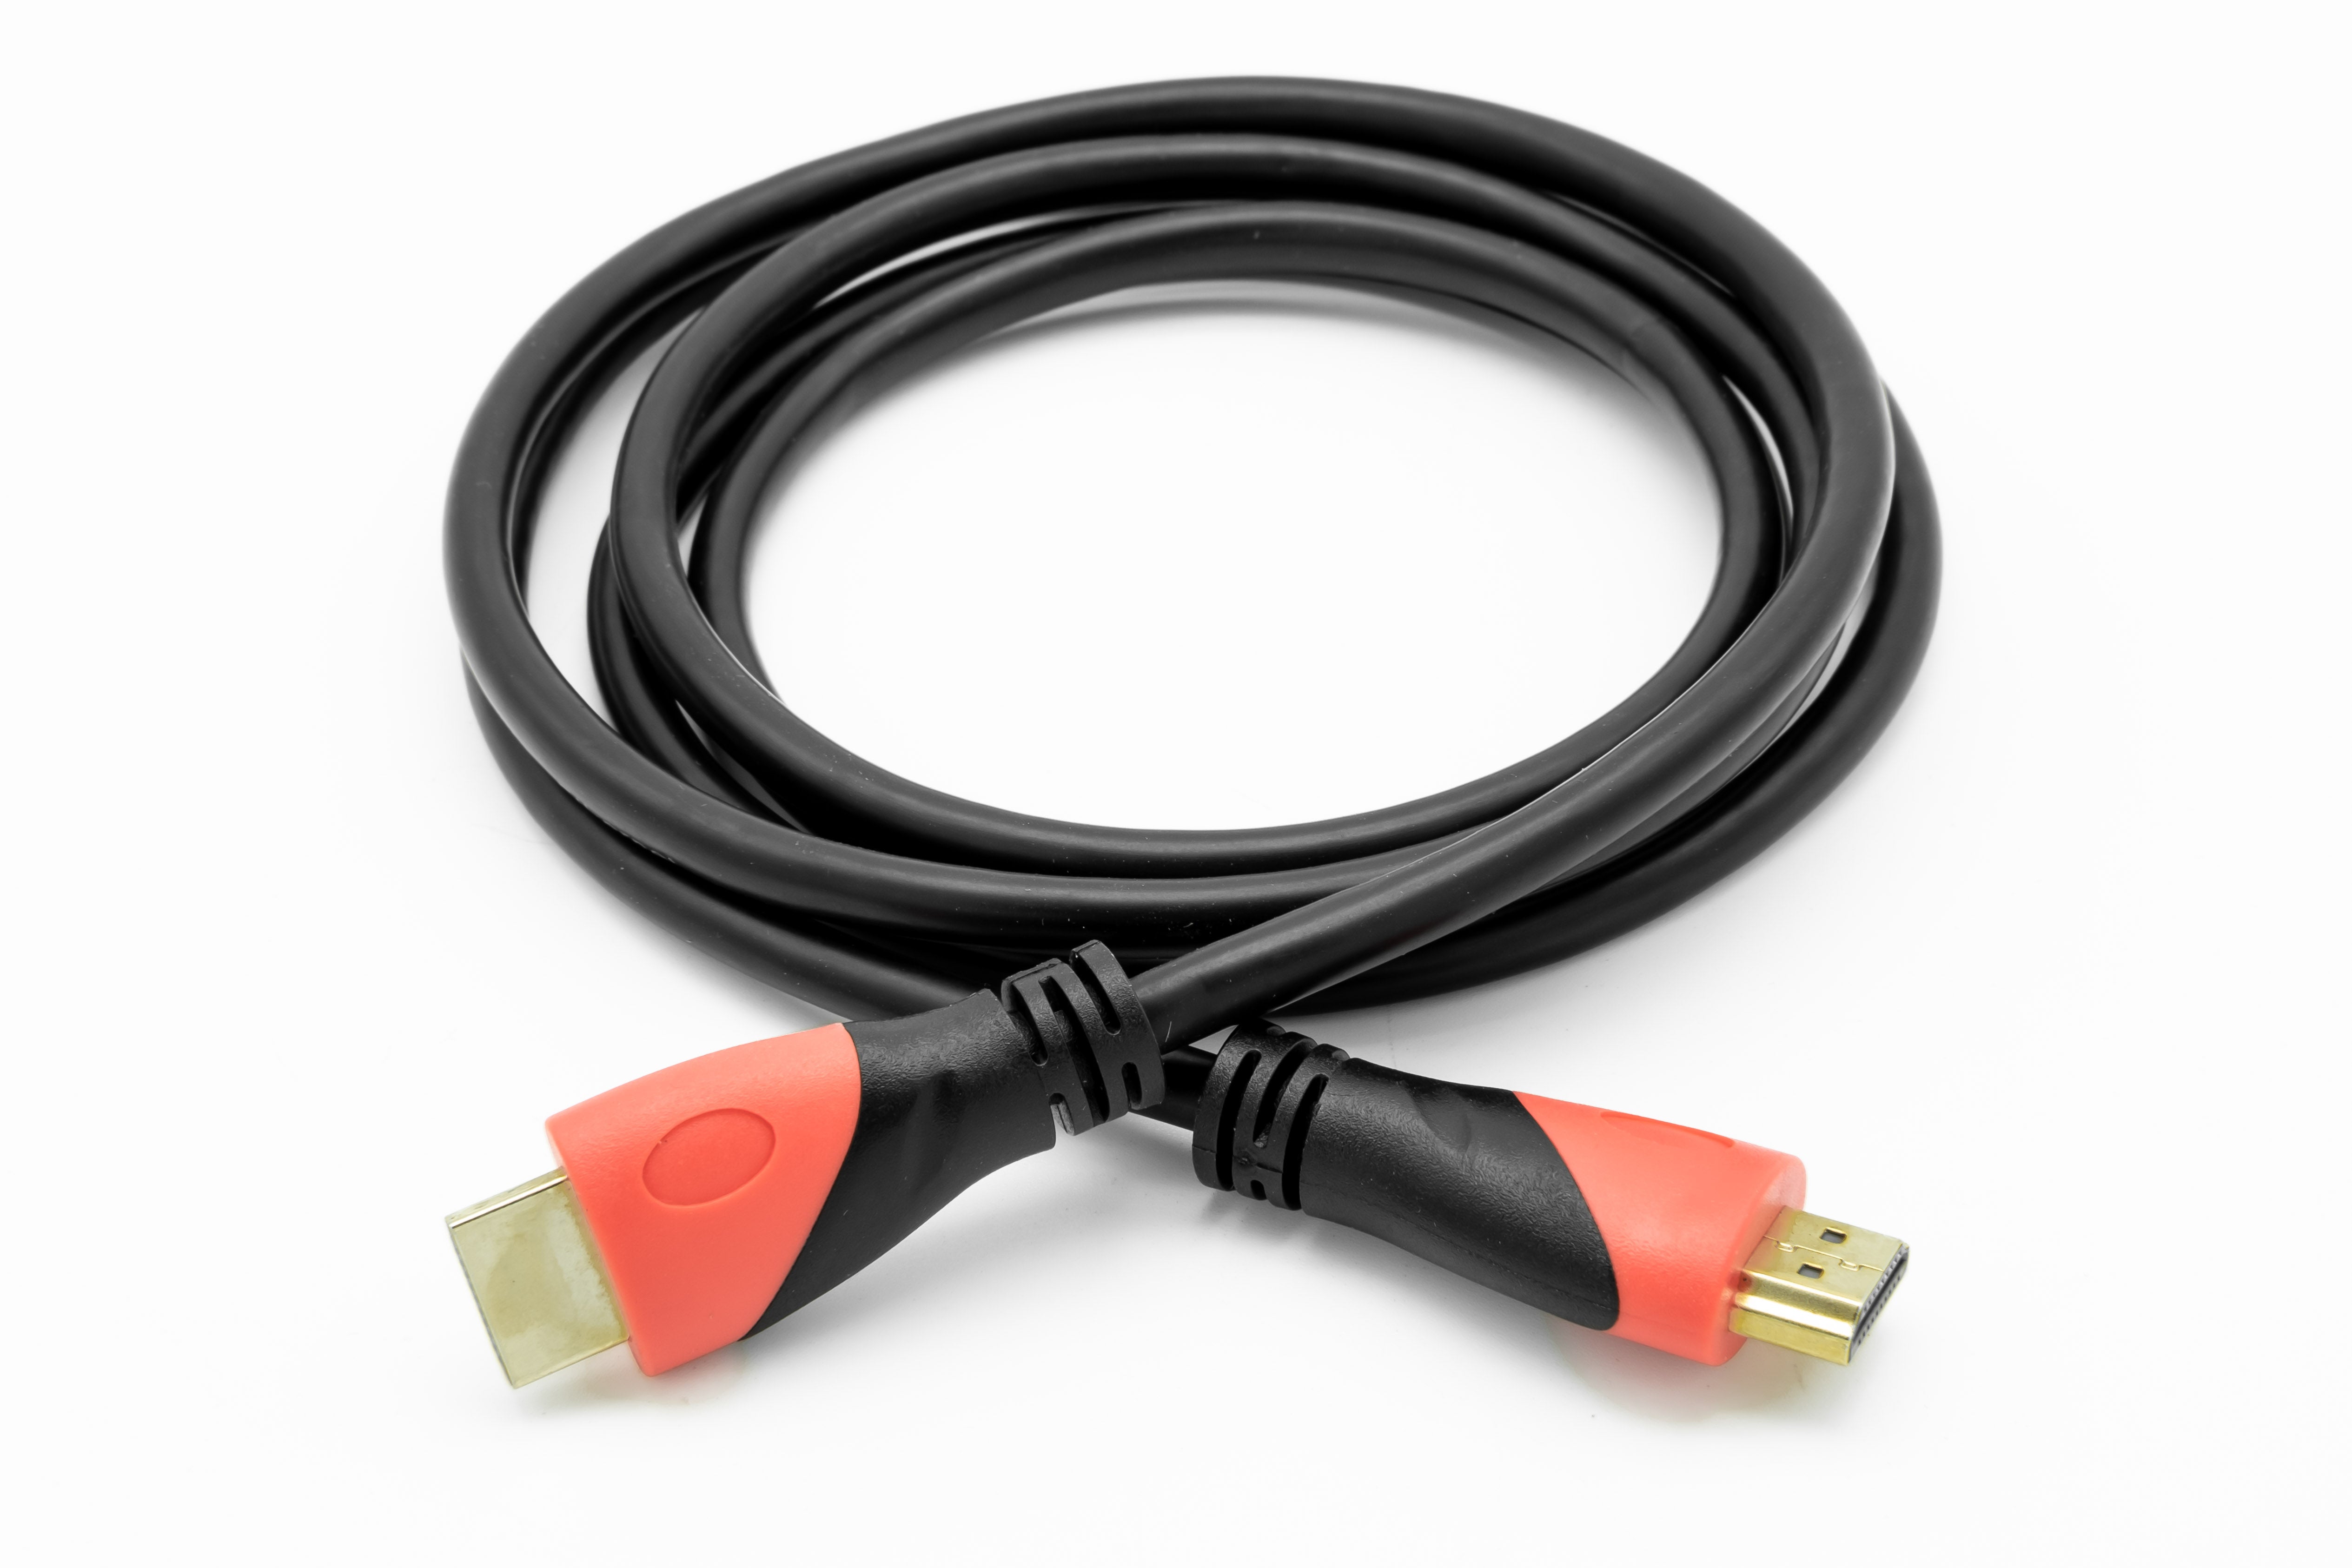 HDMI2.0 Cable - 1.8m (PE bag) - Netbit UK